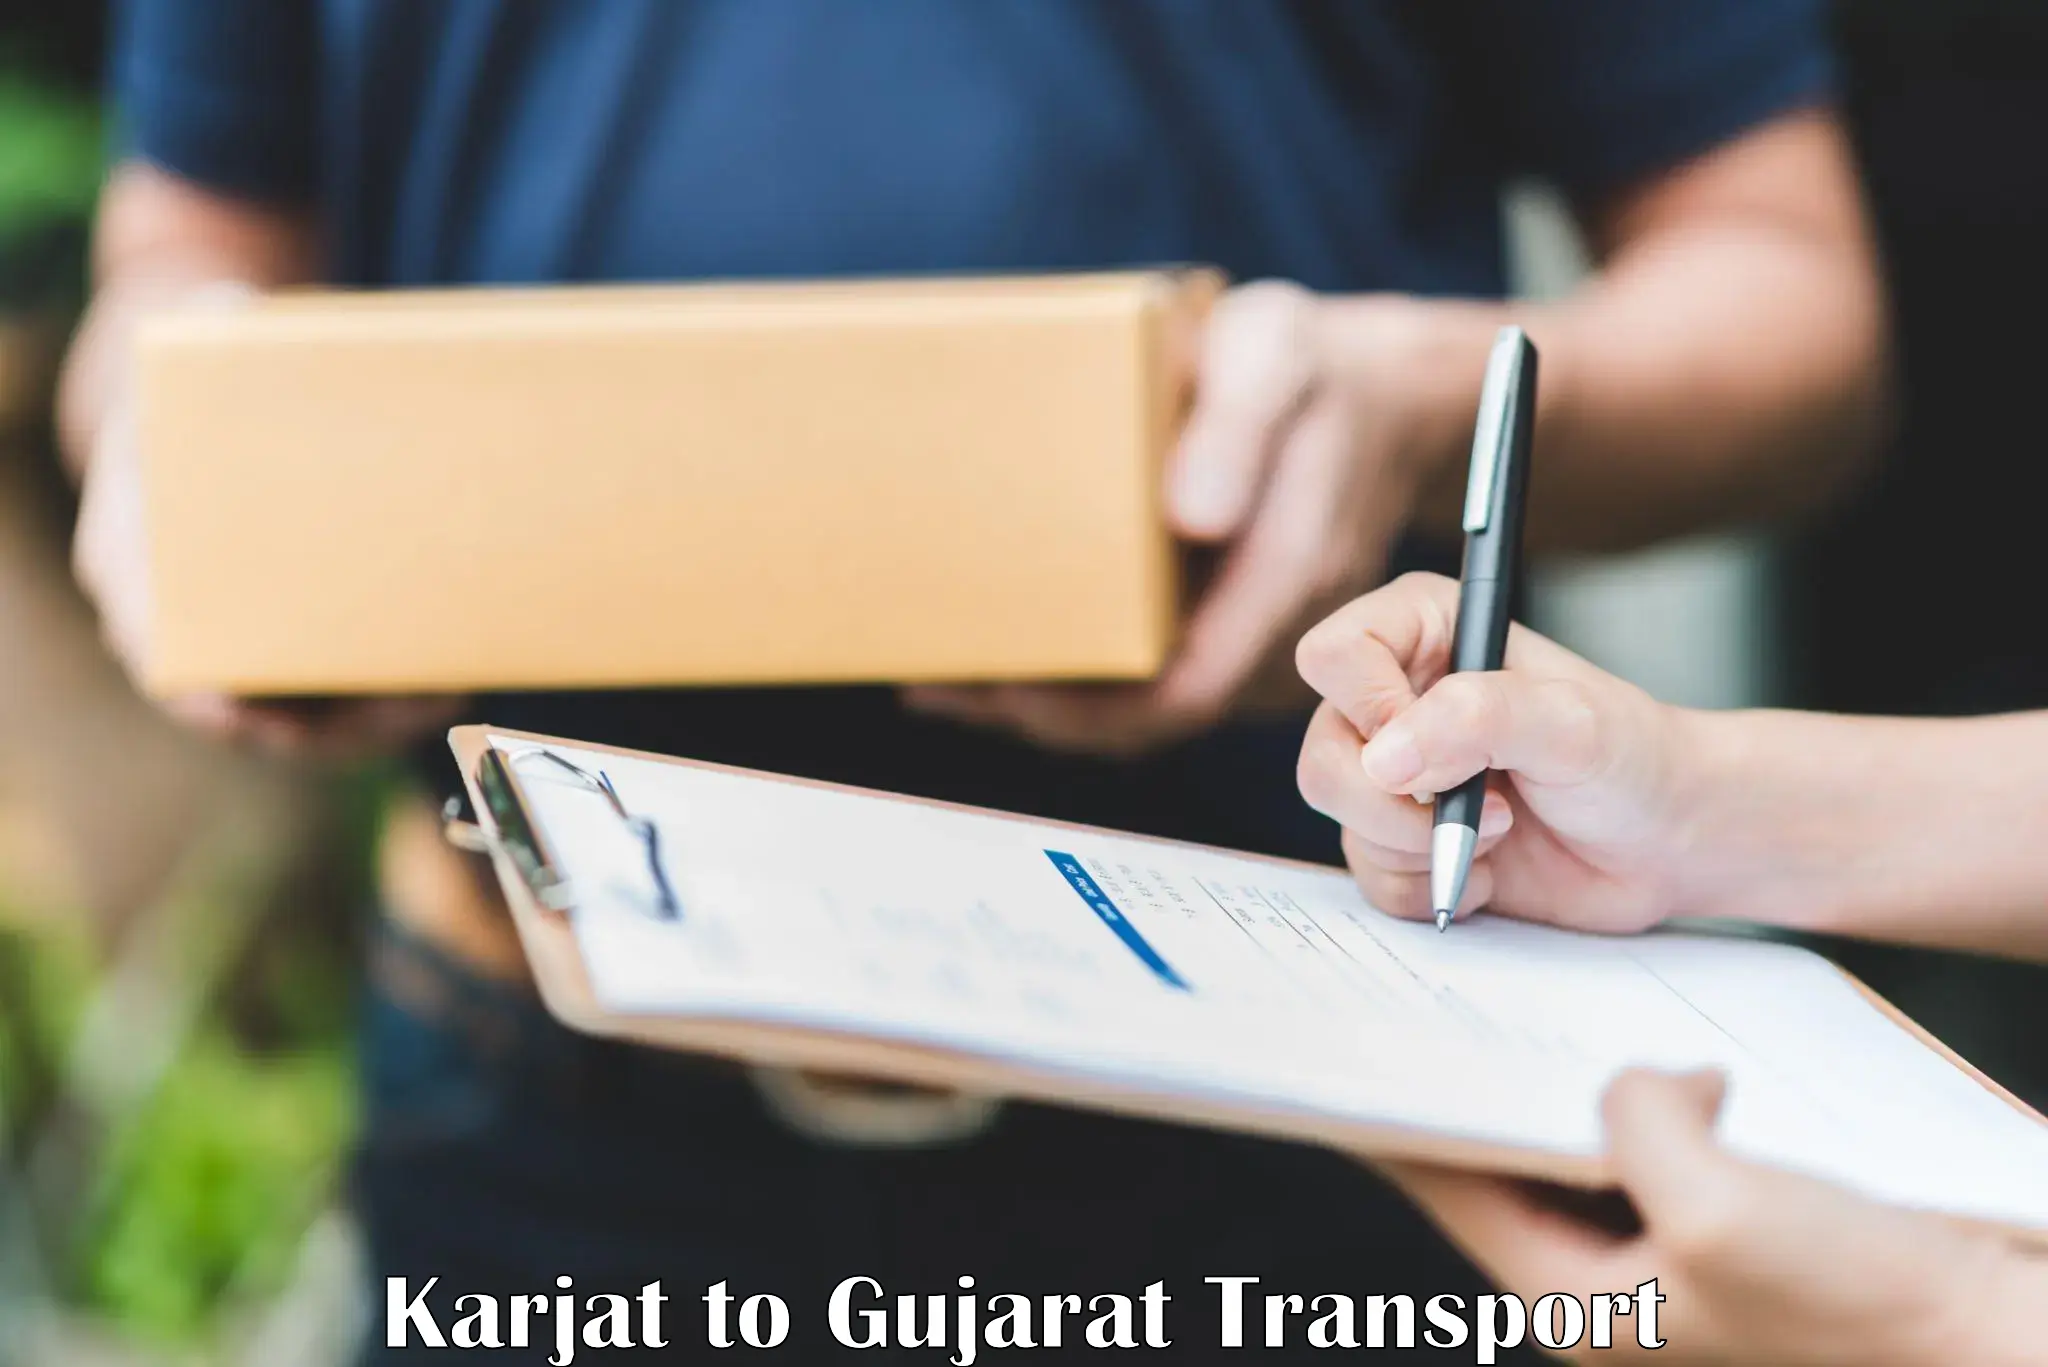 Transportation solution services Karjat to Vadodara